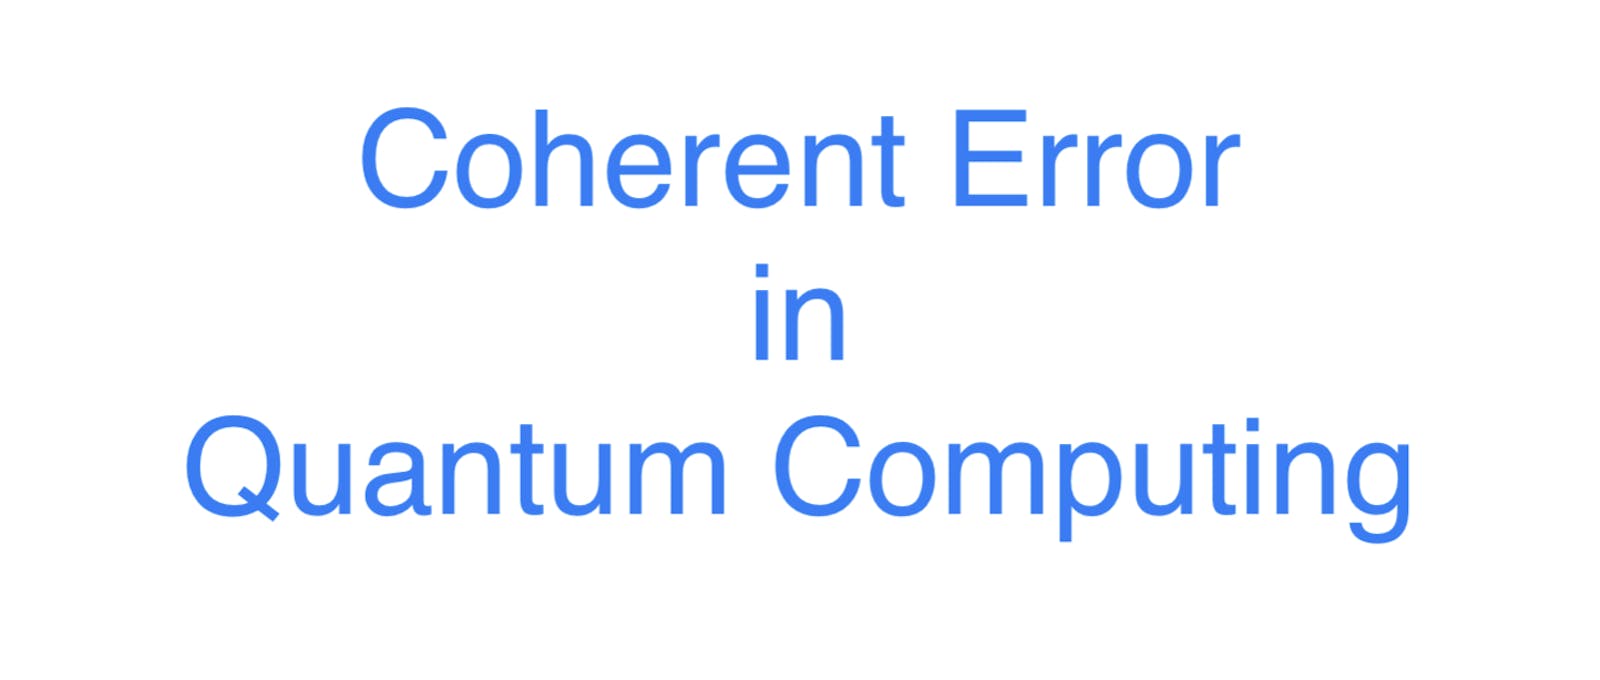 Coherent Error in Quantum Computing